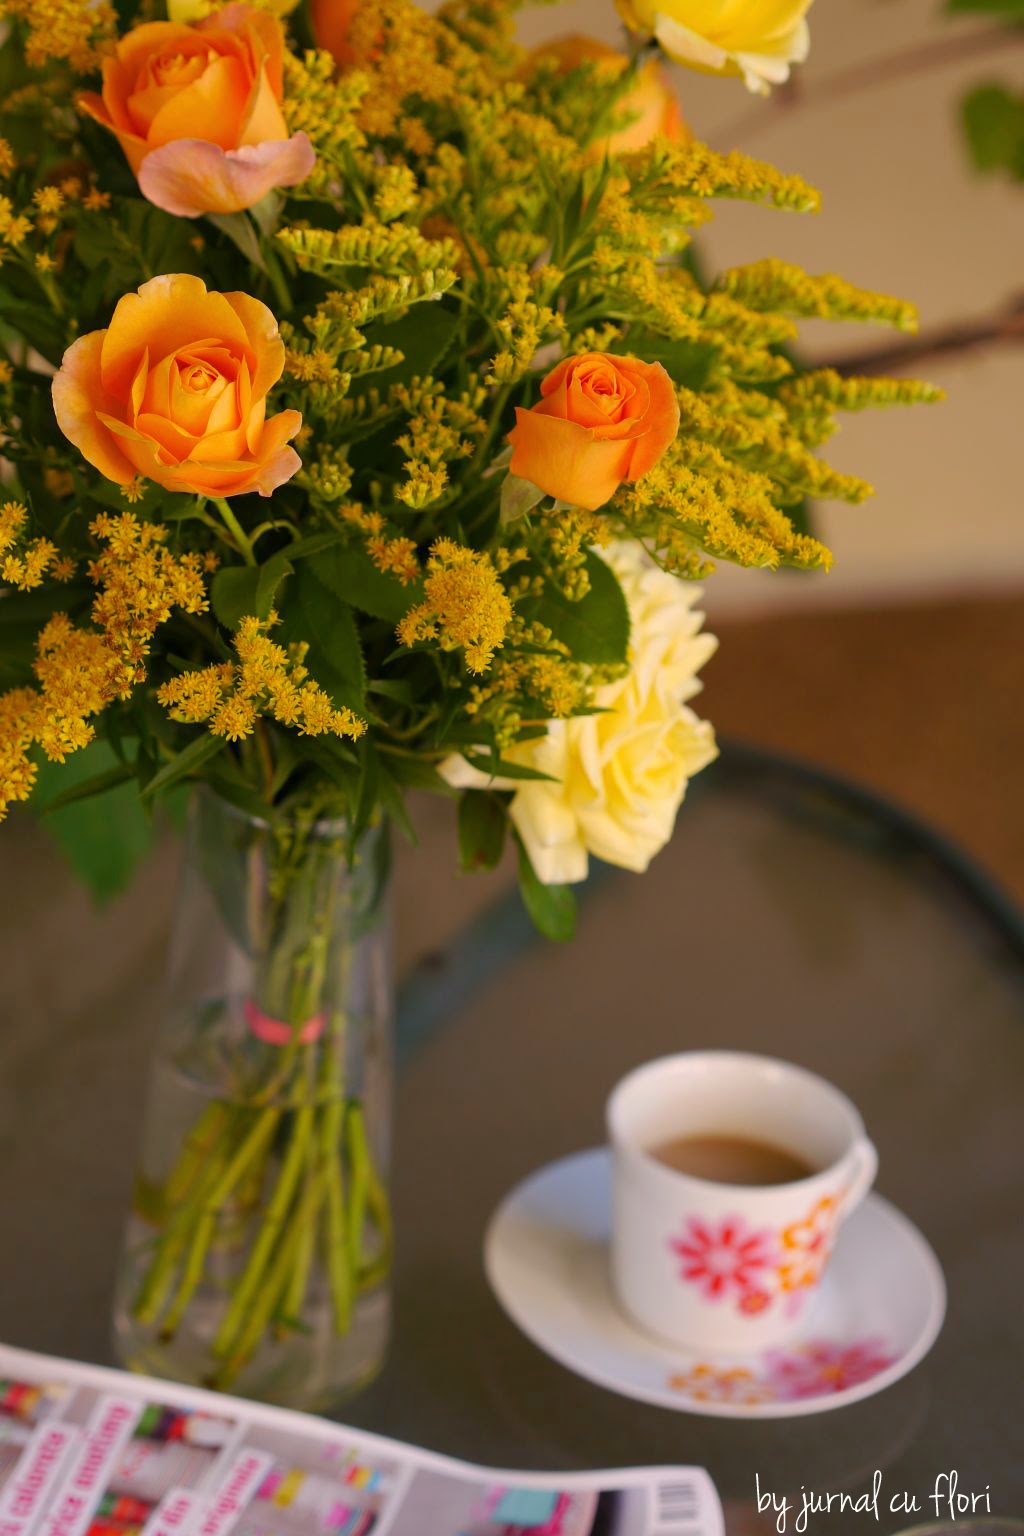  buchet de flori  trandafiri si cafea